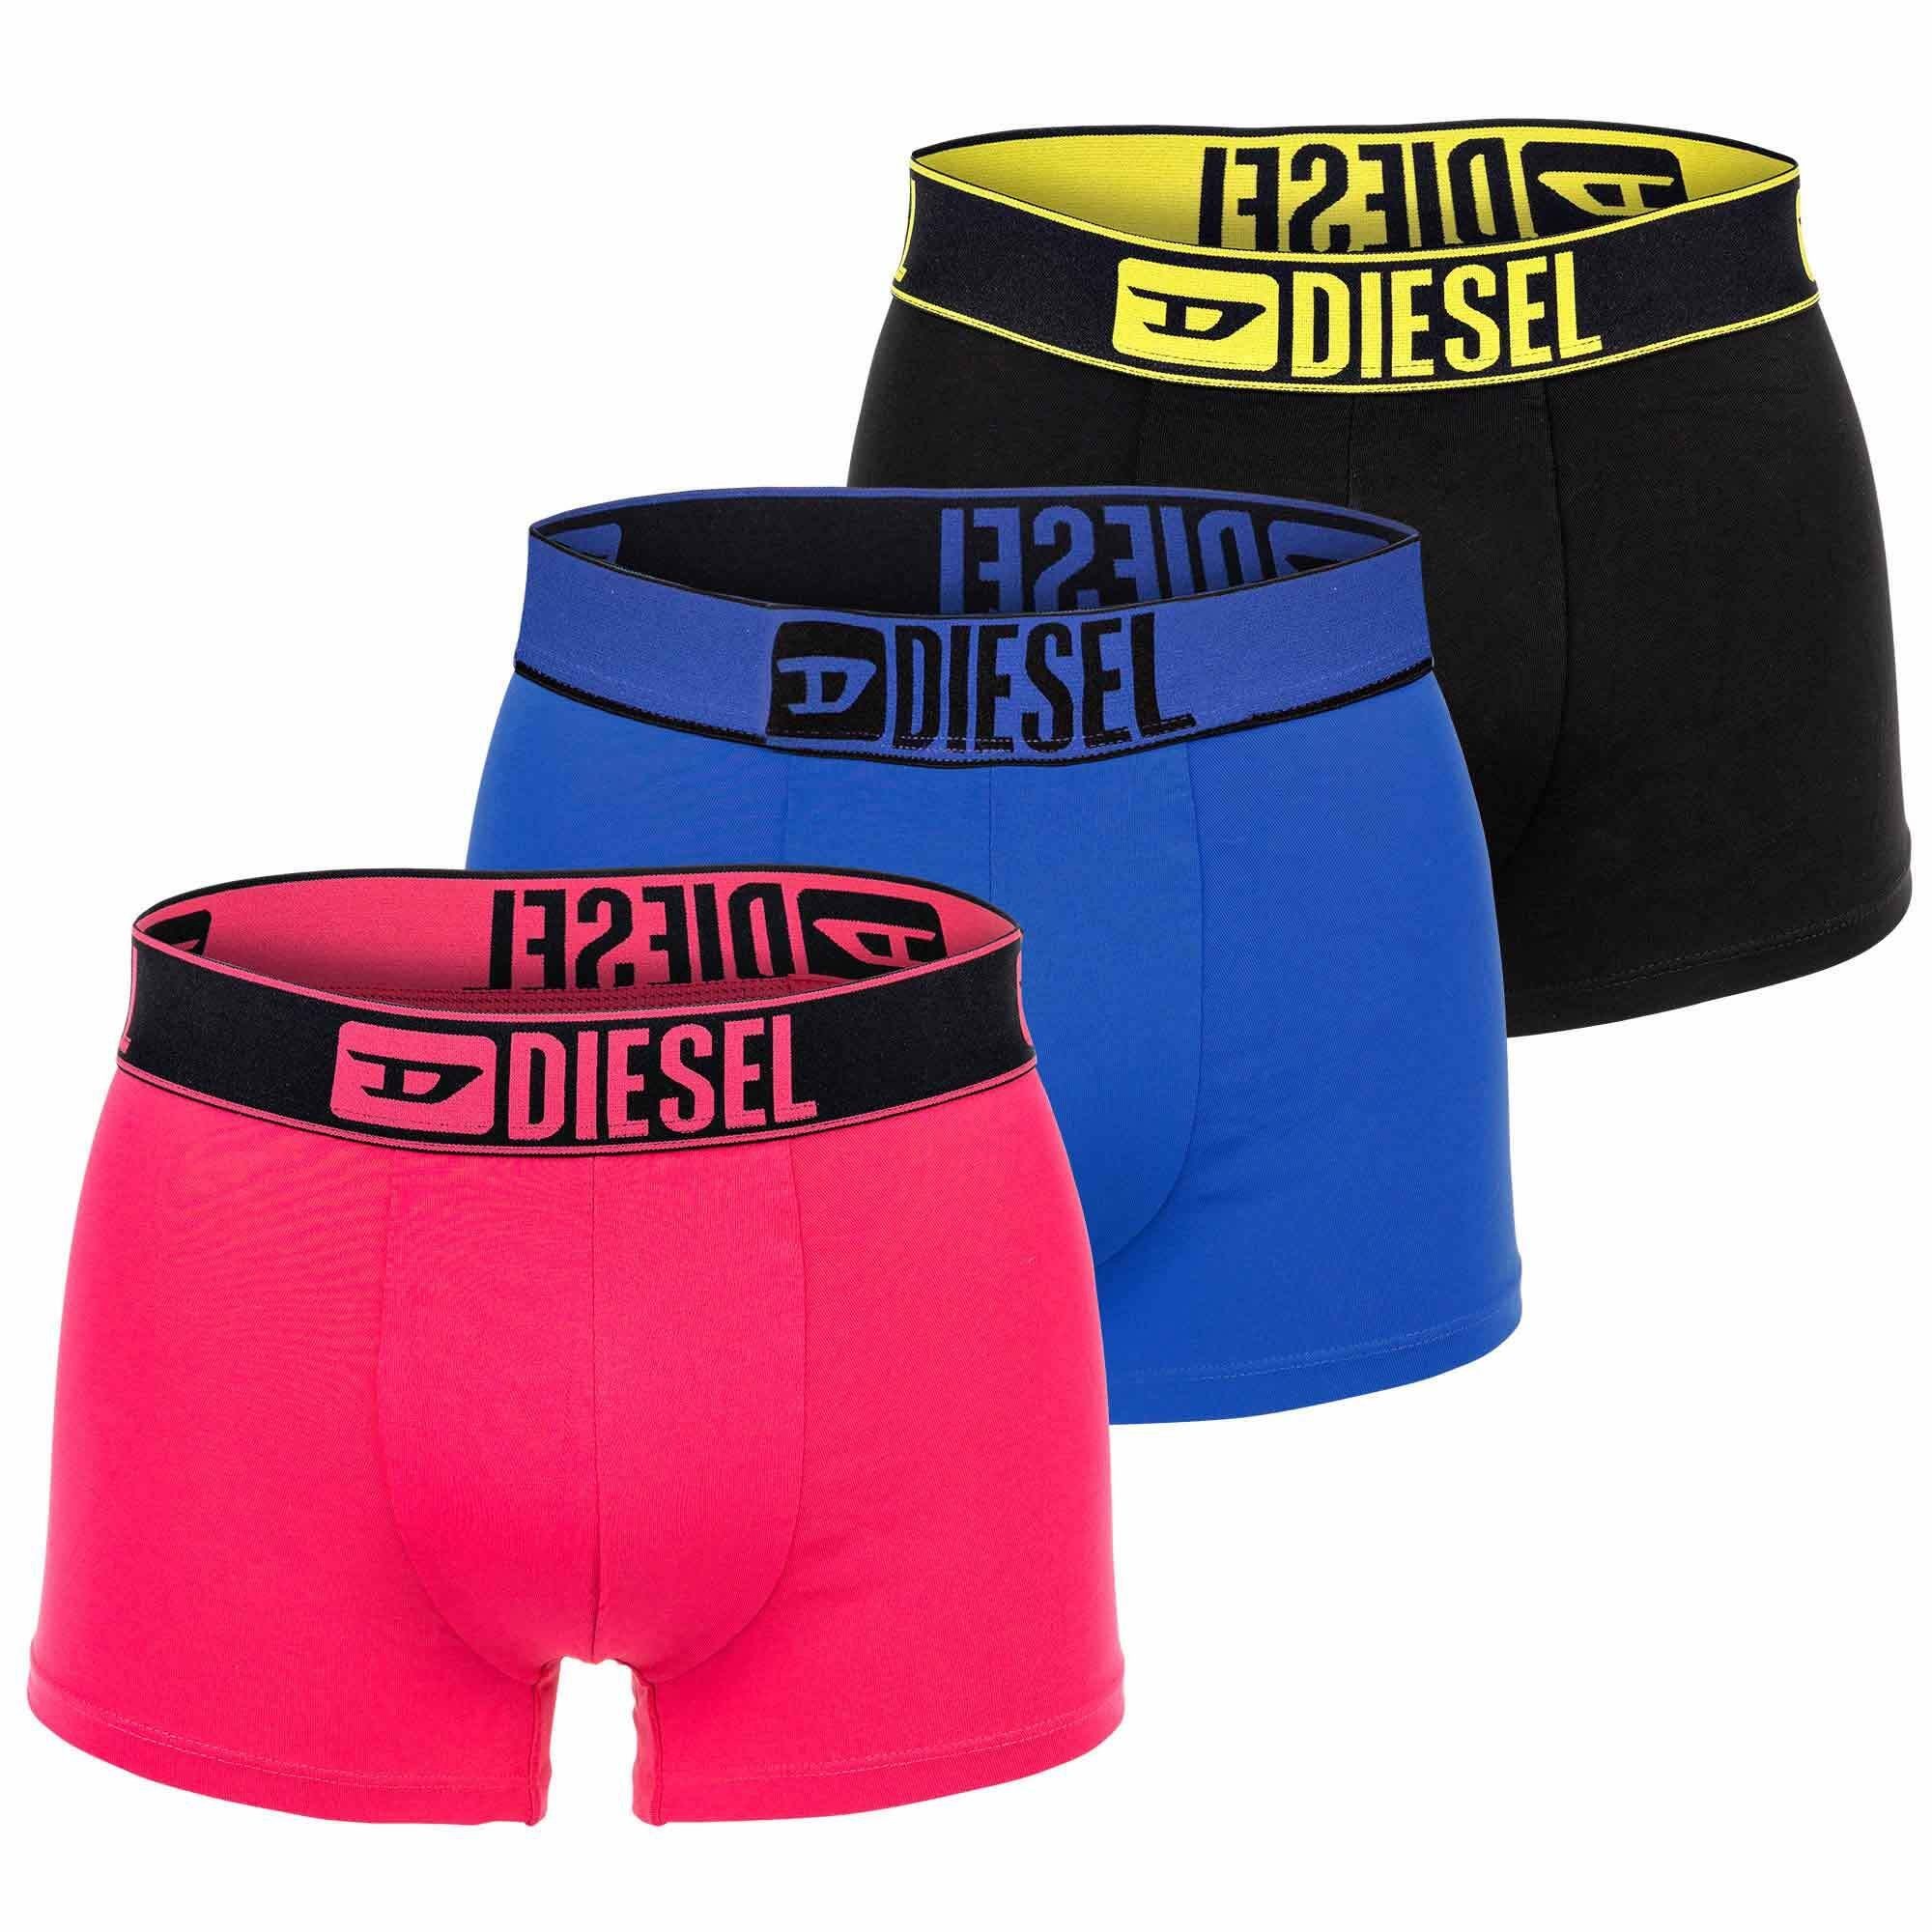 Diesel Boxer Herren Boxershorts, 3er Pack - Blau/Pink/Schwarz | Boxershorts